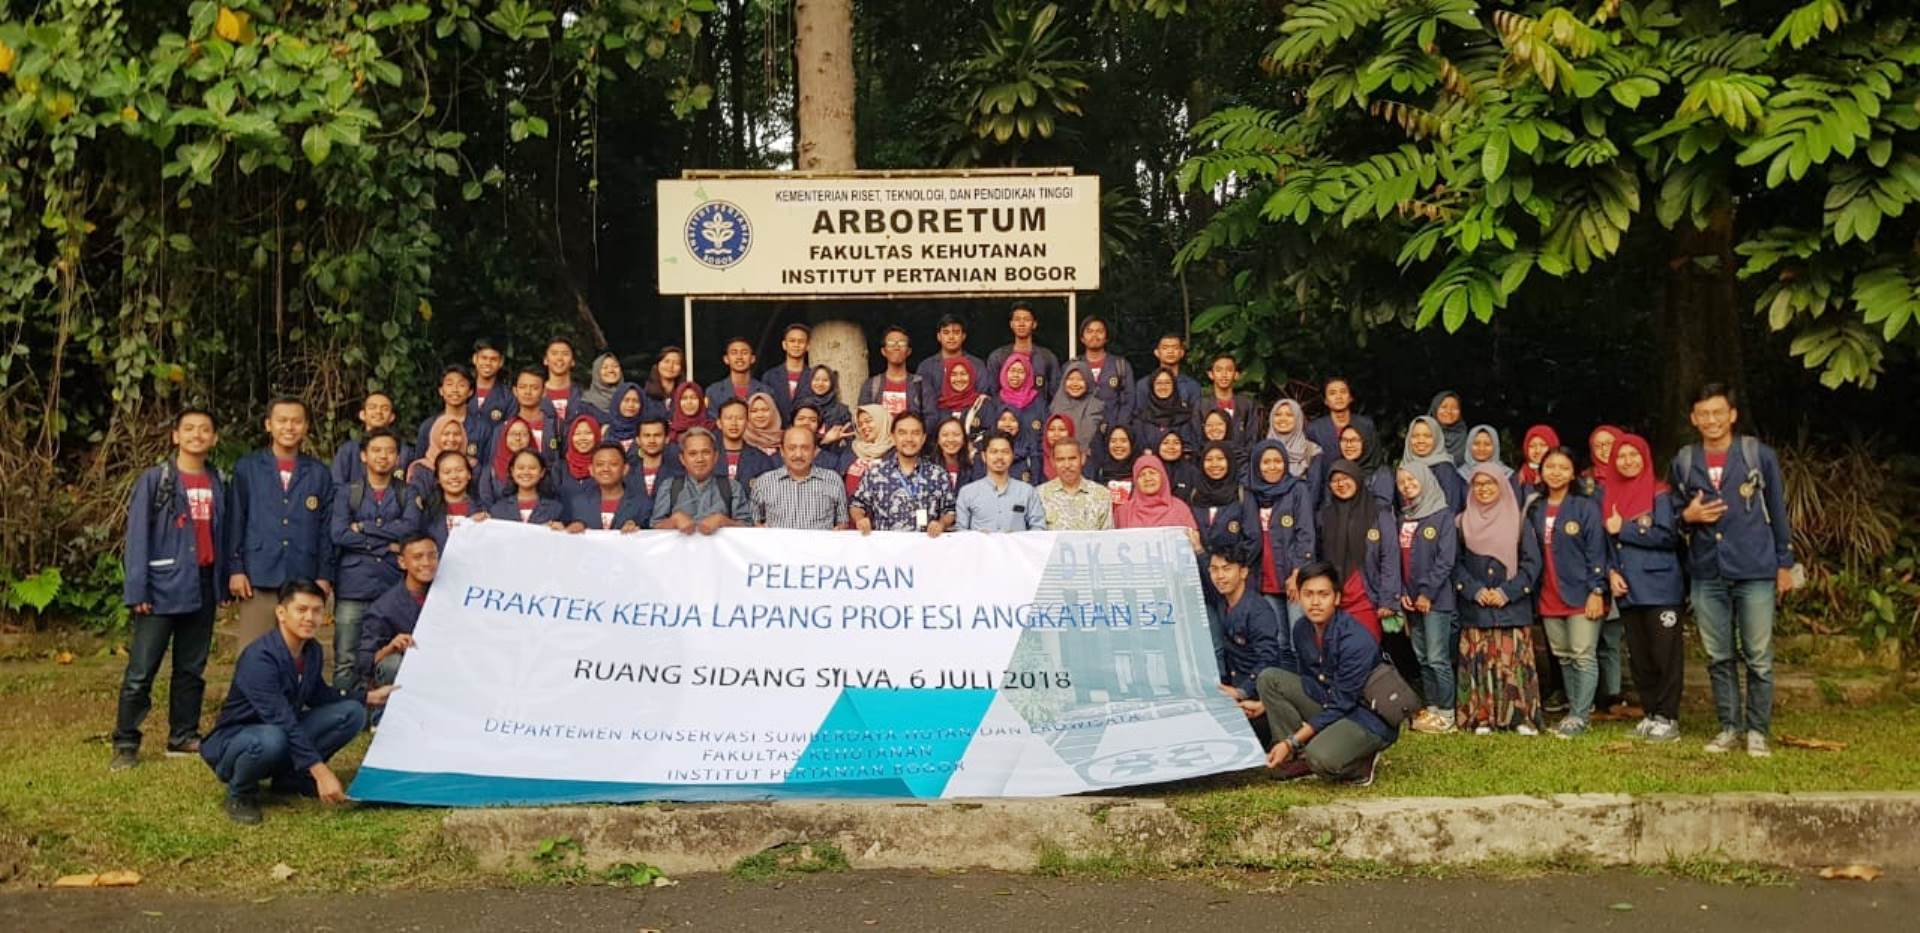 Pelepasan Praktek Kerja Lapang Profesi (PKLP) Angkatan E52 (2015)